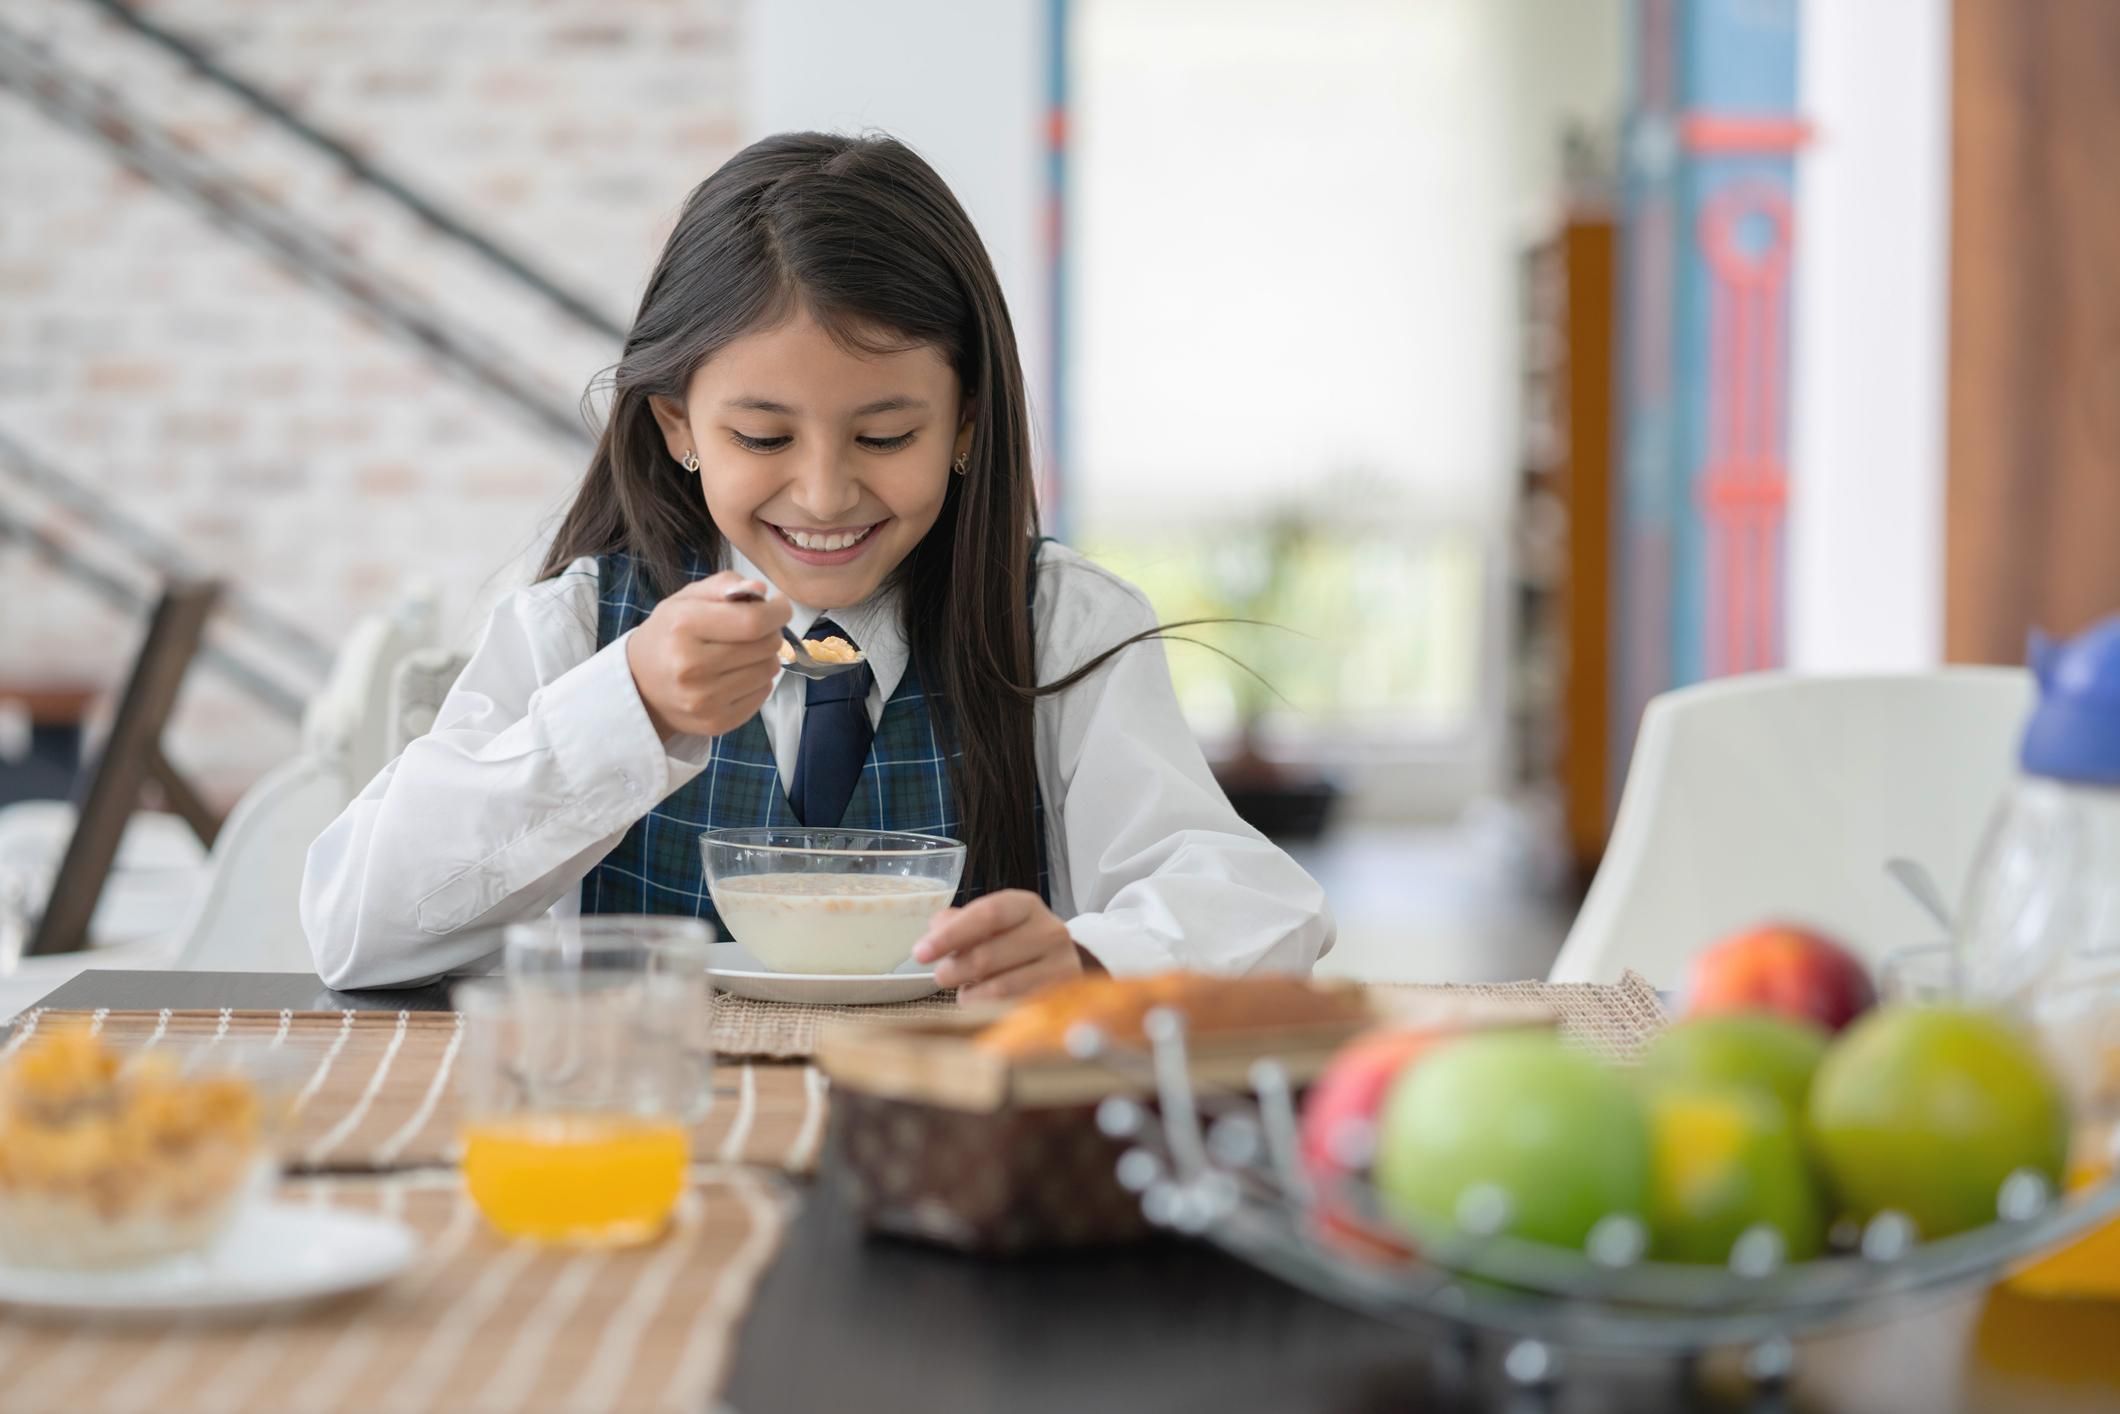 Сніданок може покращити успішність дитини в школі: дослідження